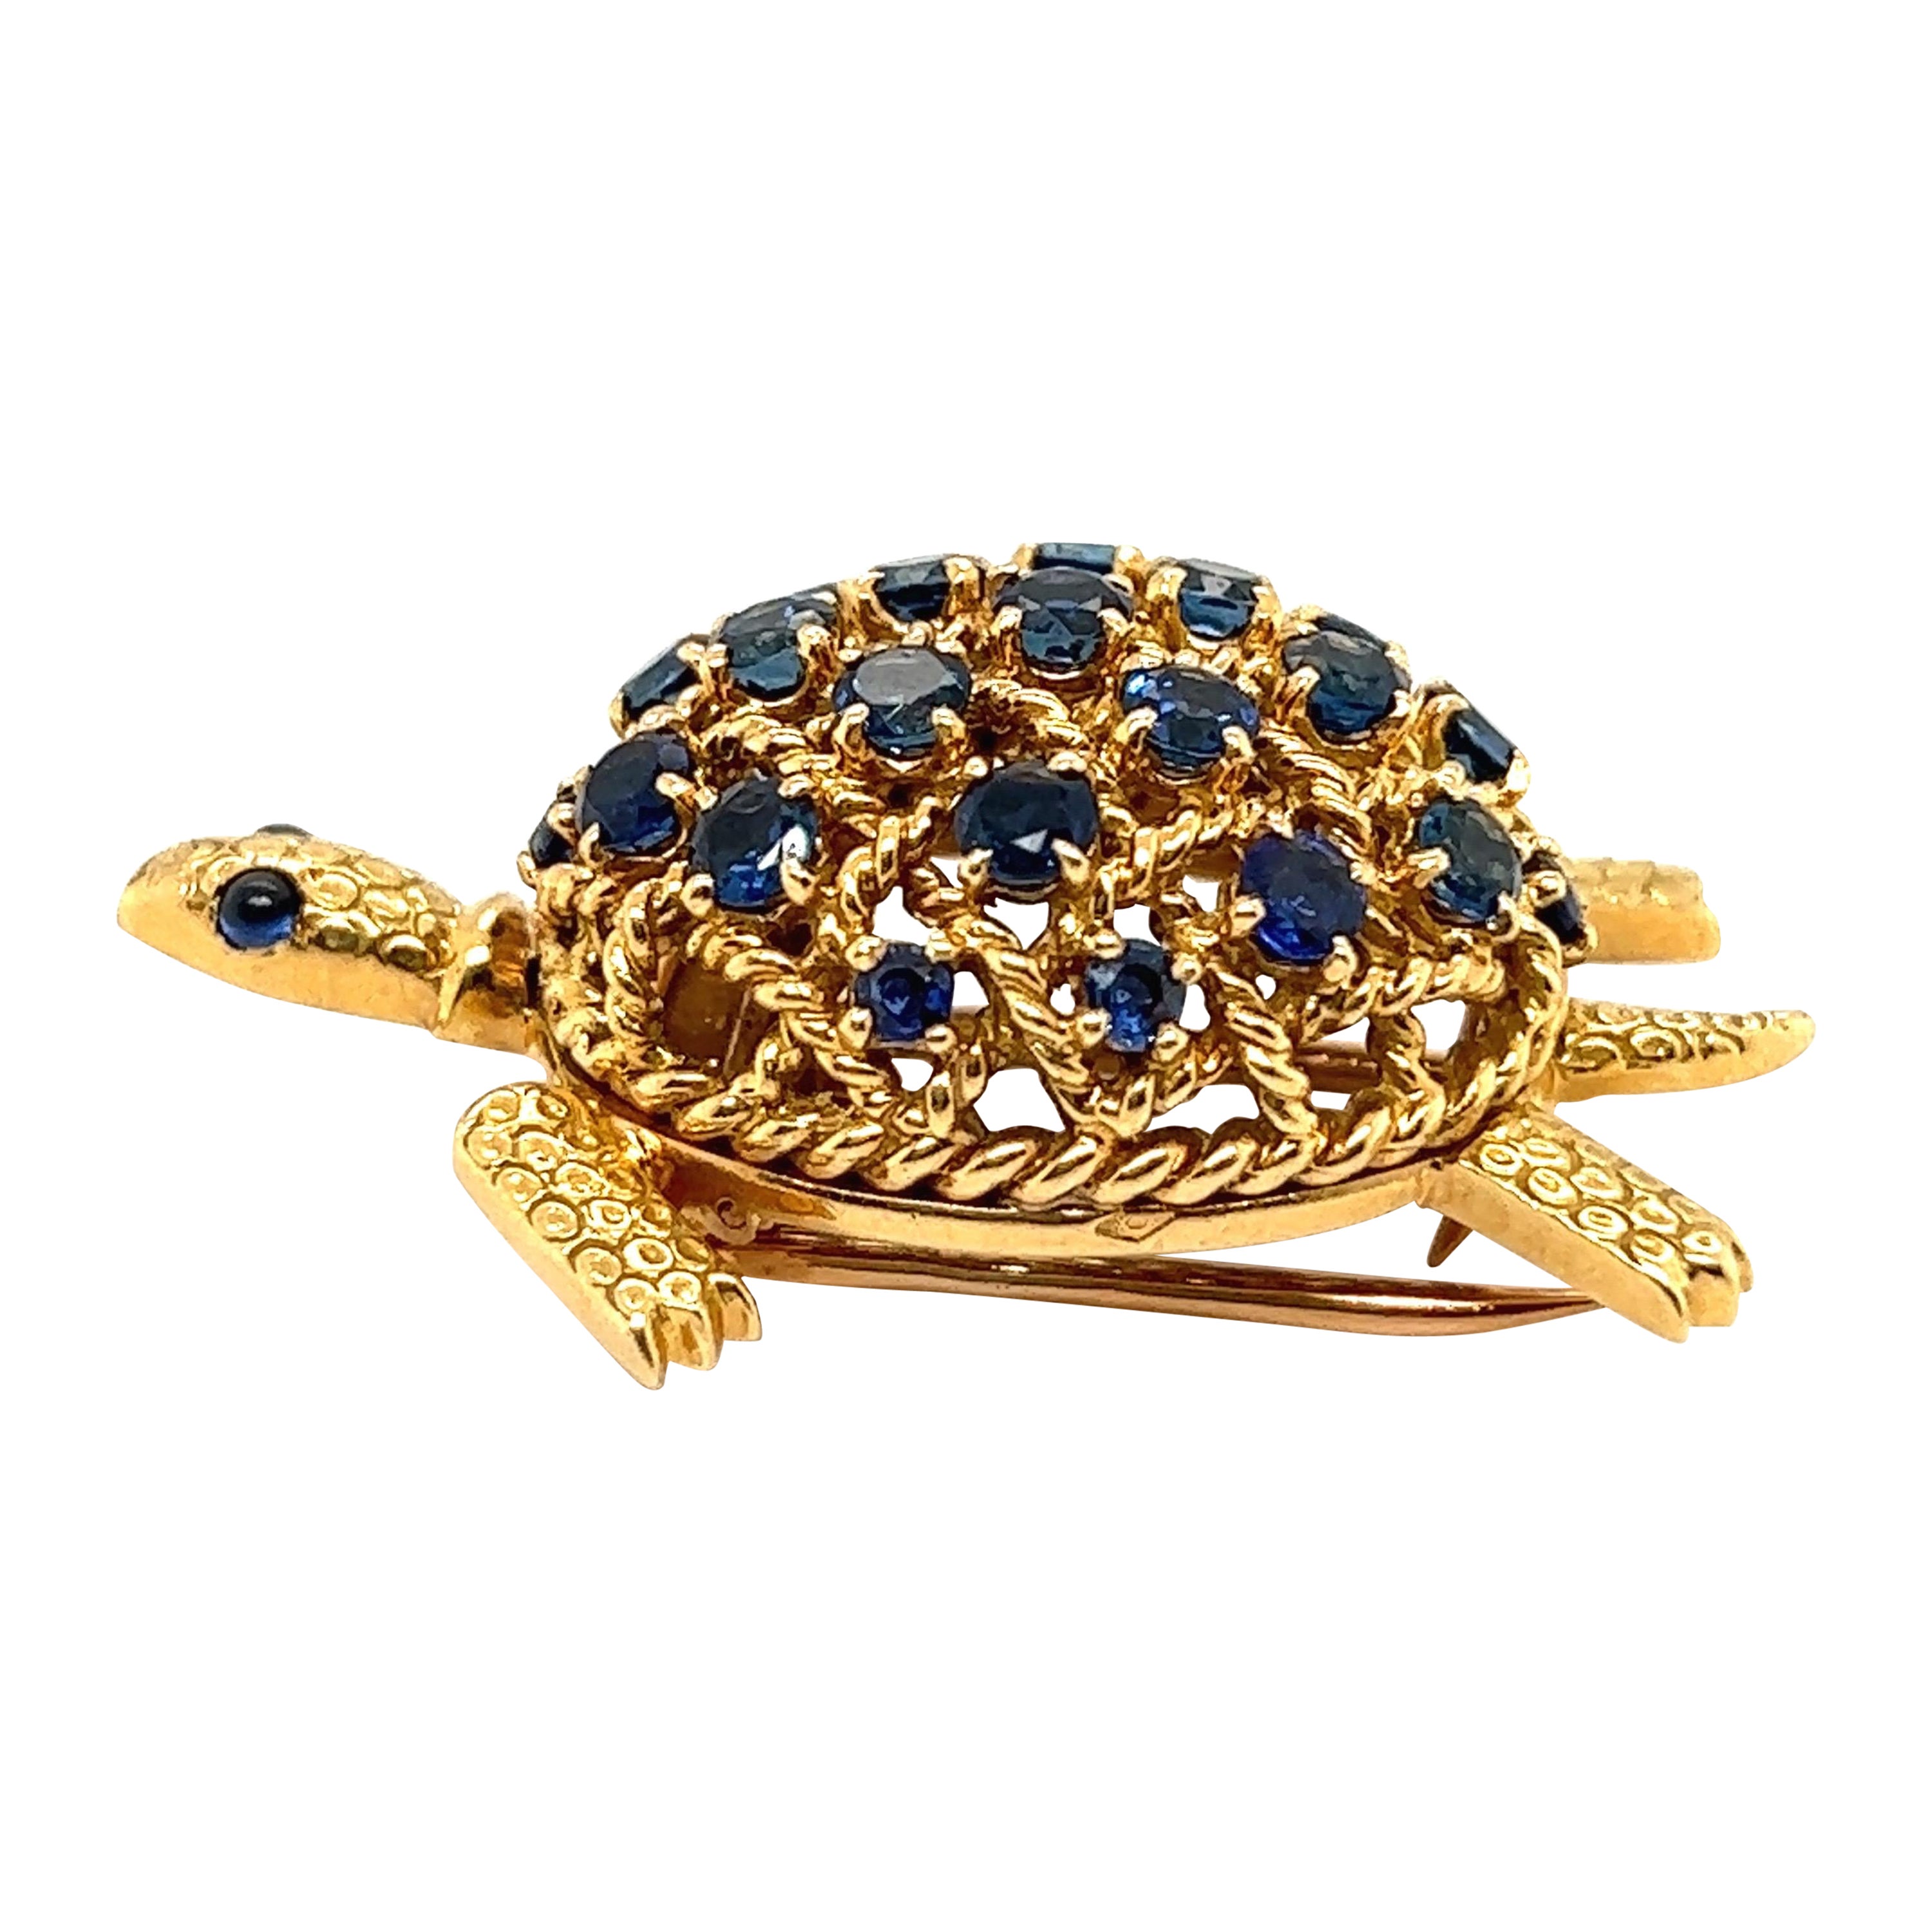 Schildkrötenbrosche aus 18 Karat Gelbgold und Saphiren, von Cartier, ca. 1950-1960er Jahre  